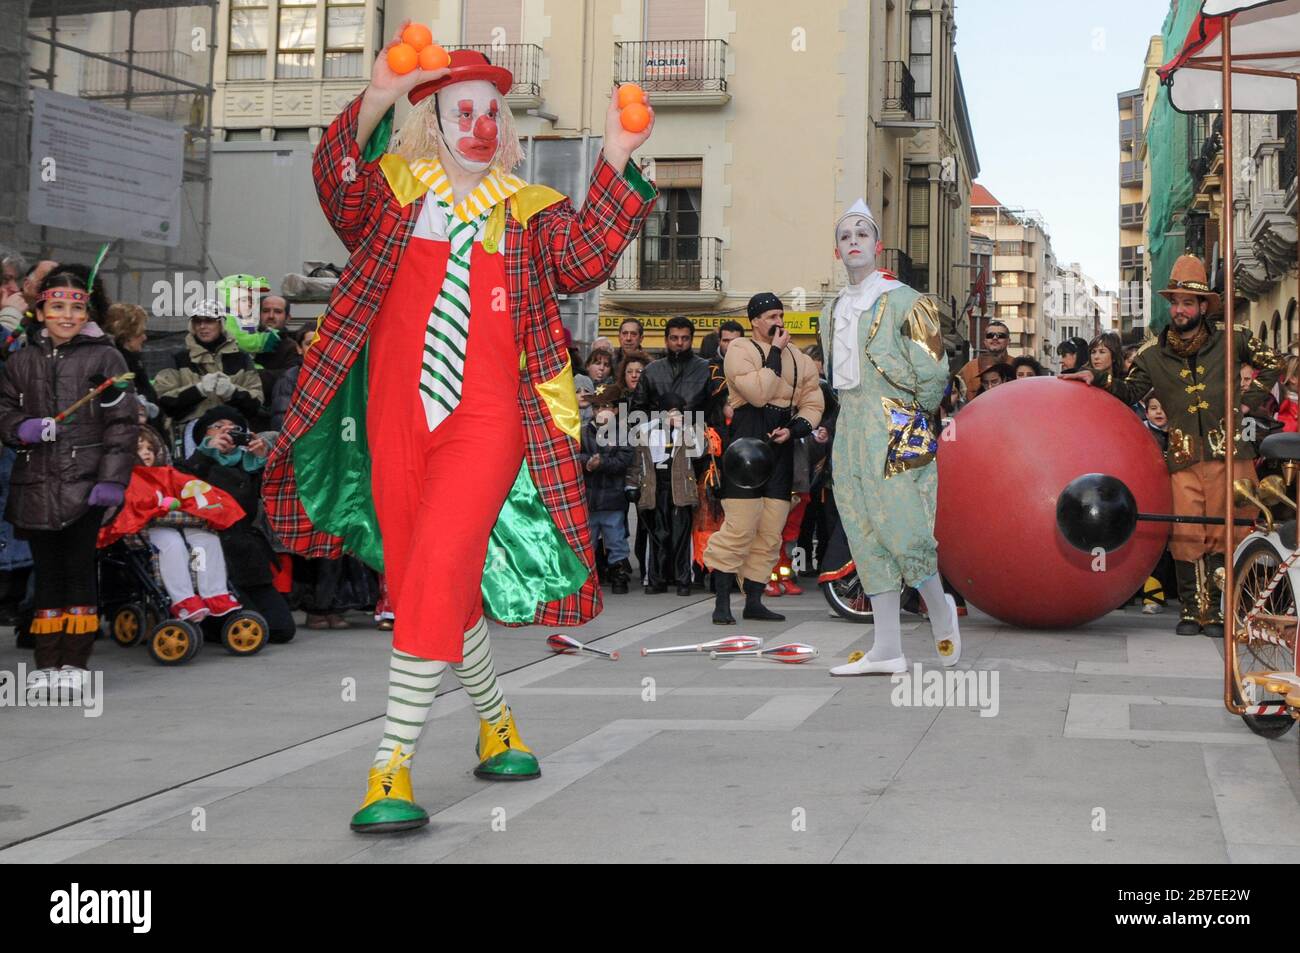 Sfilata di carnevale colorata in fondo alla strada con clown. Foto Stock